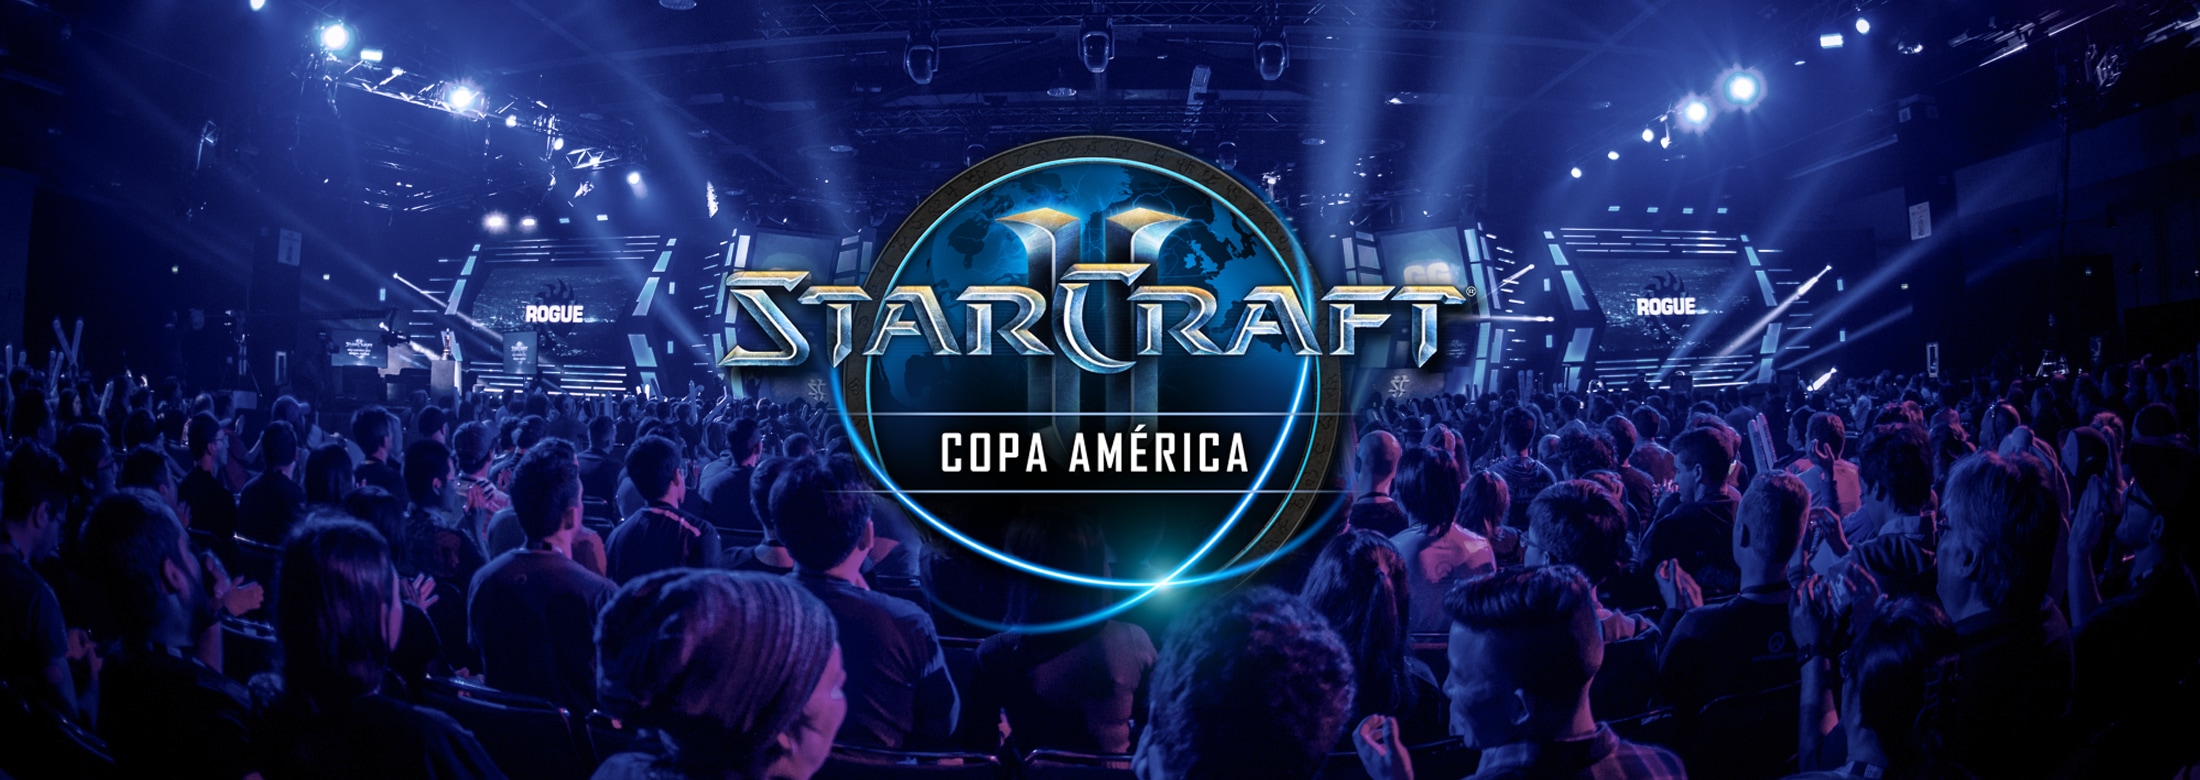 ¡Bienvenidos a la Copa América 2019 de StarCraft II!